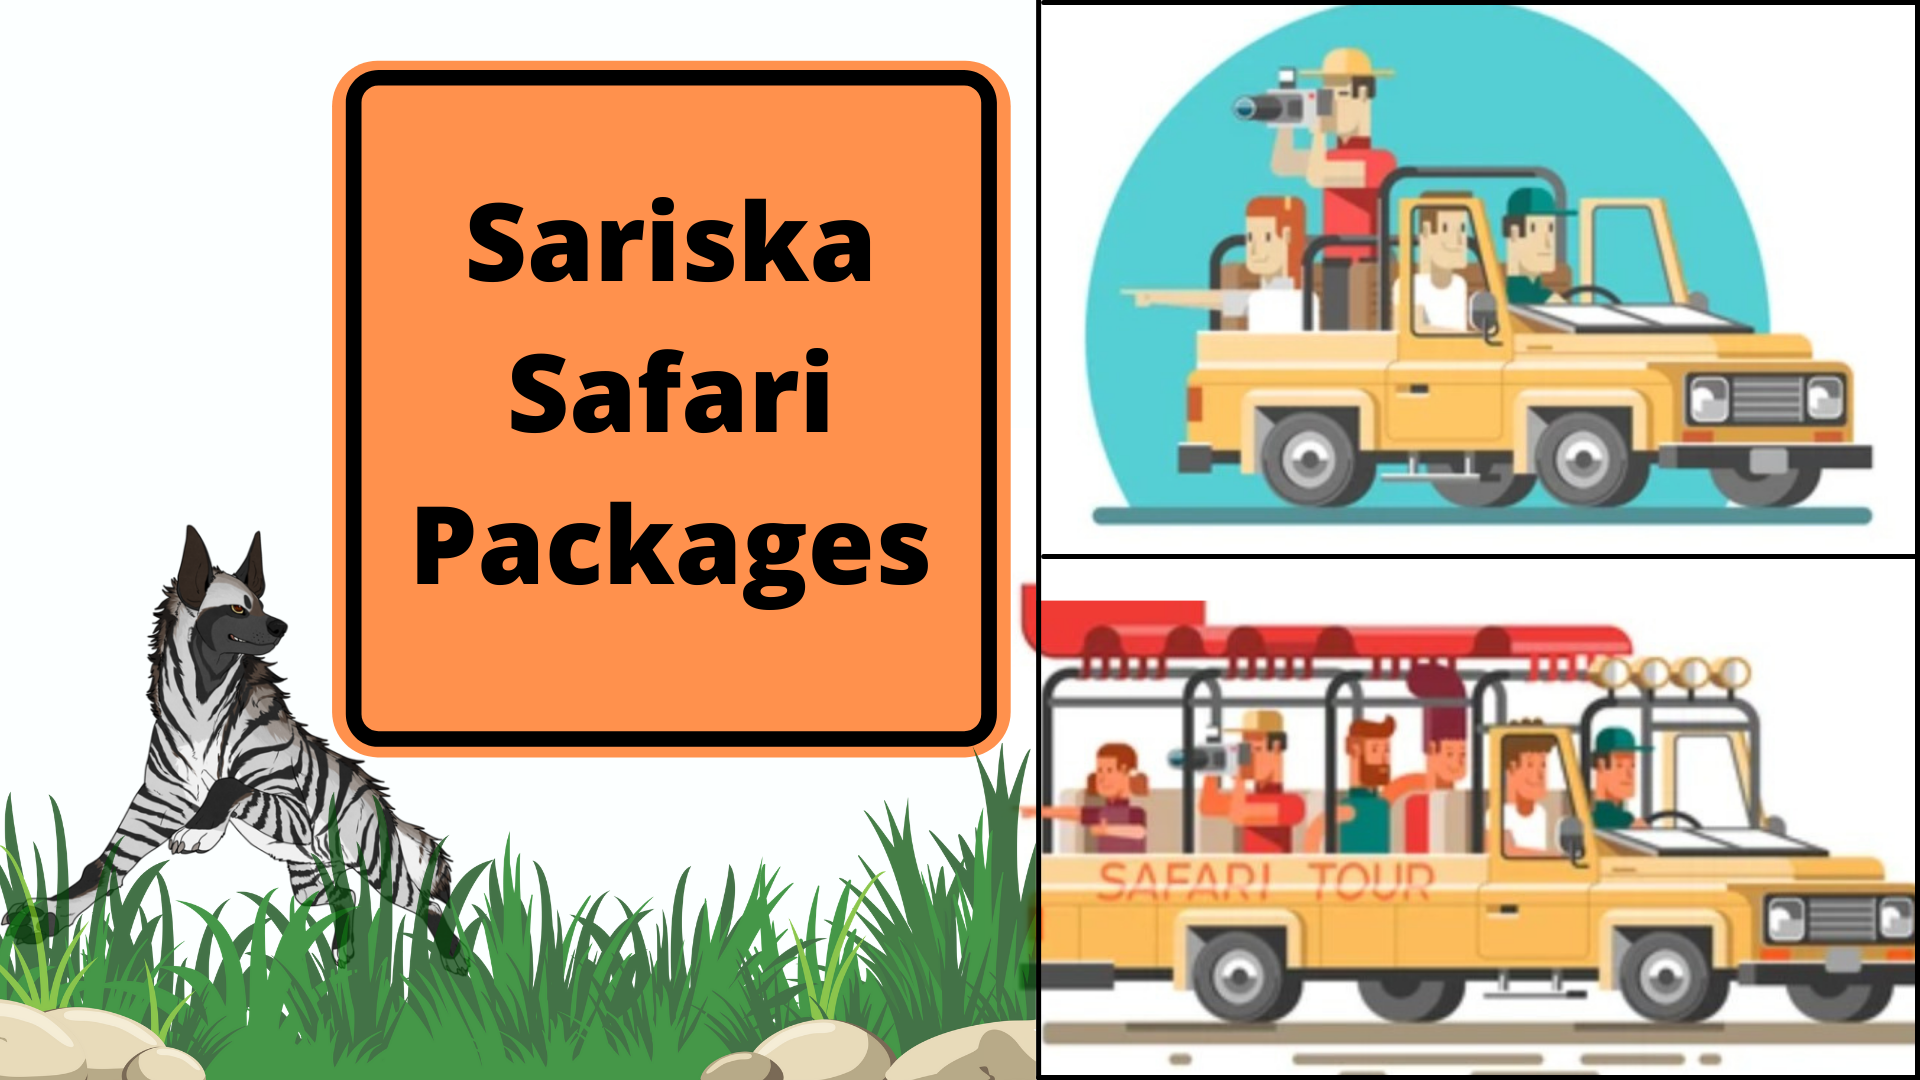 Sariska Safari Packages